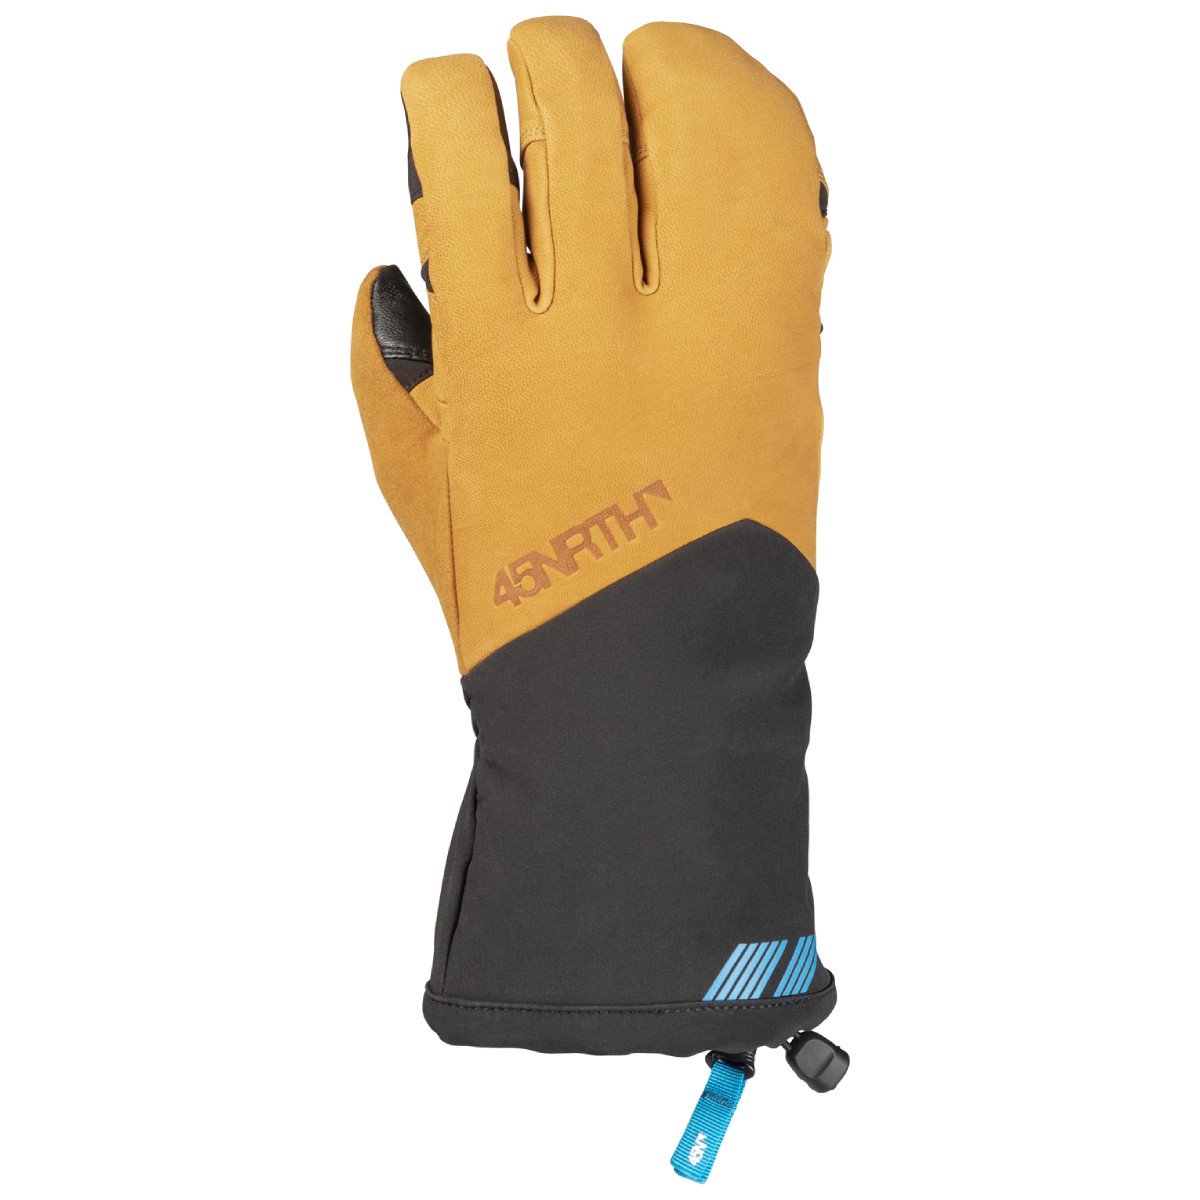 45NRTH Sturmfist 4 Leather Gloves